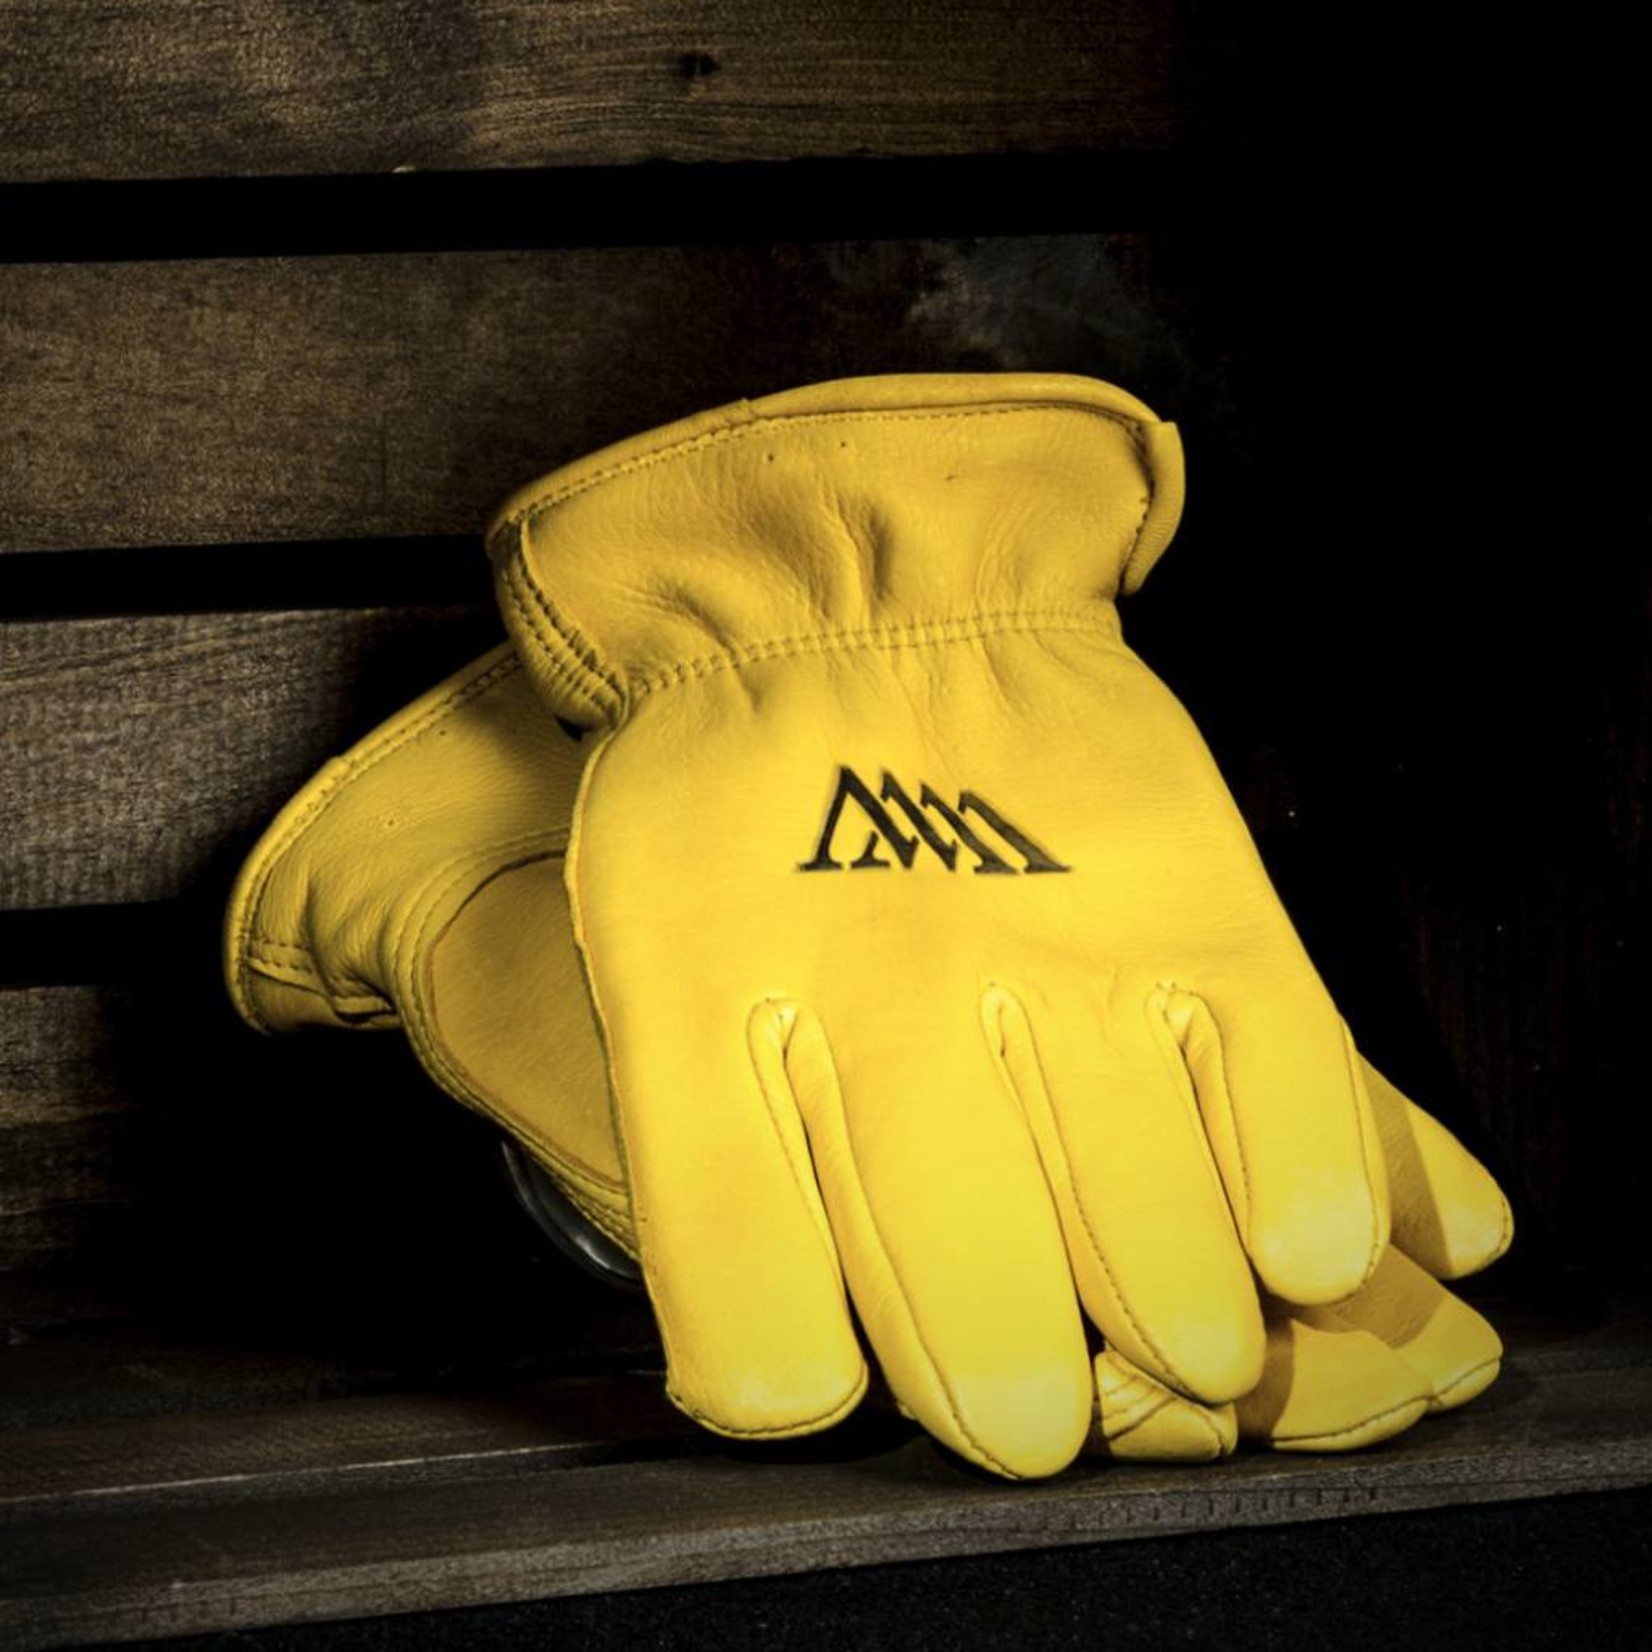 G2 Gloves G2 Insulated Gloves